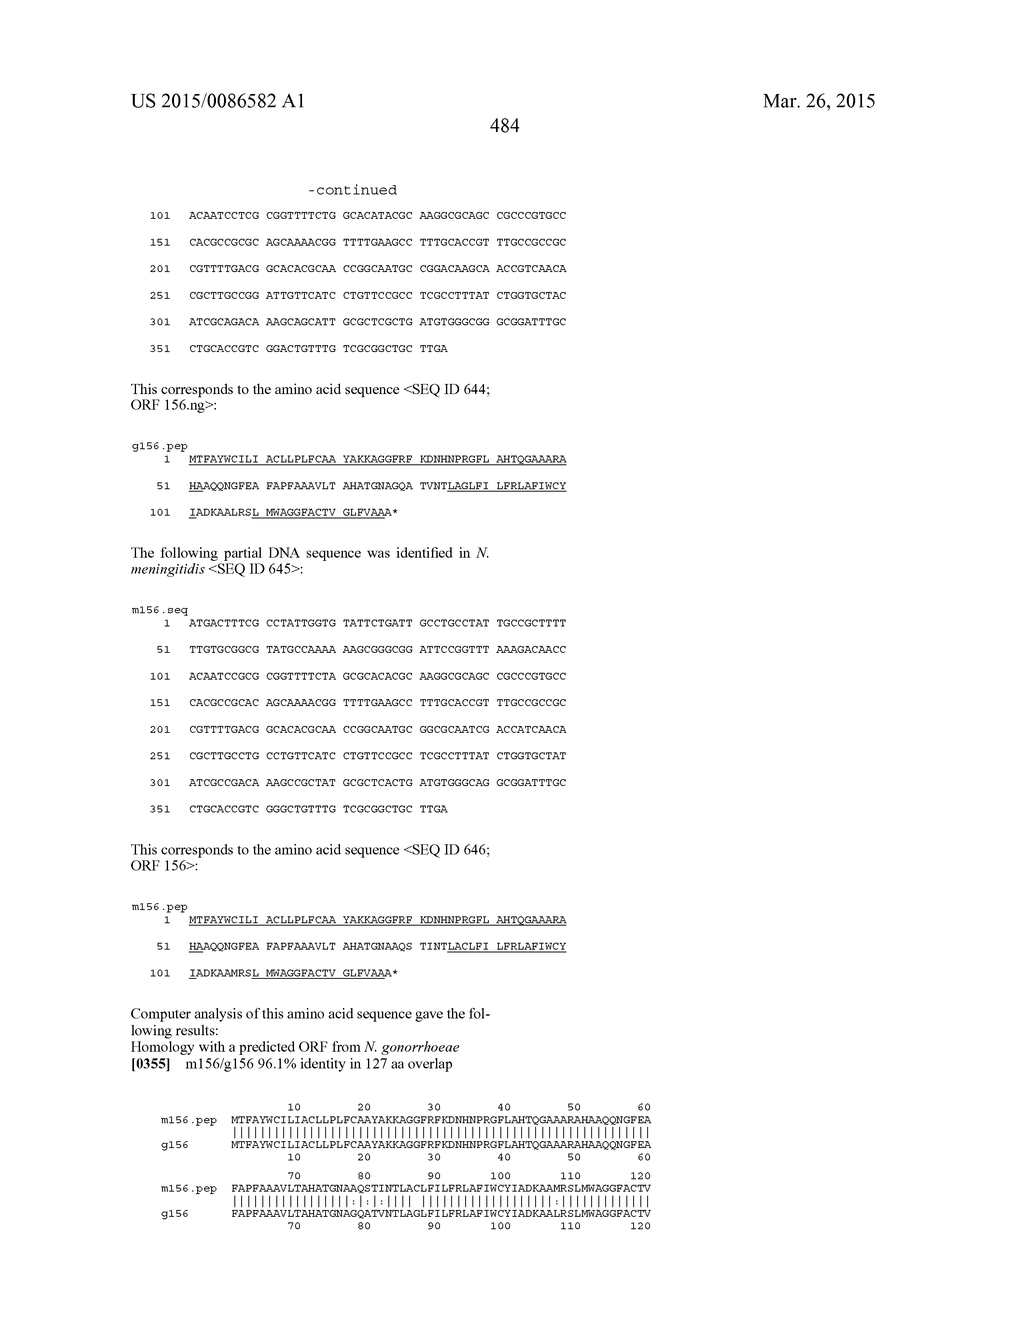 NEISSERIA MENINGITIDIS ANTIGENS AND COMPOSITIONS - diagram, schematic, and image 516